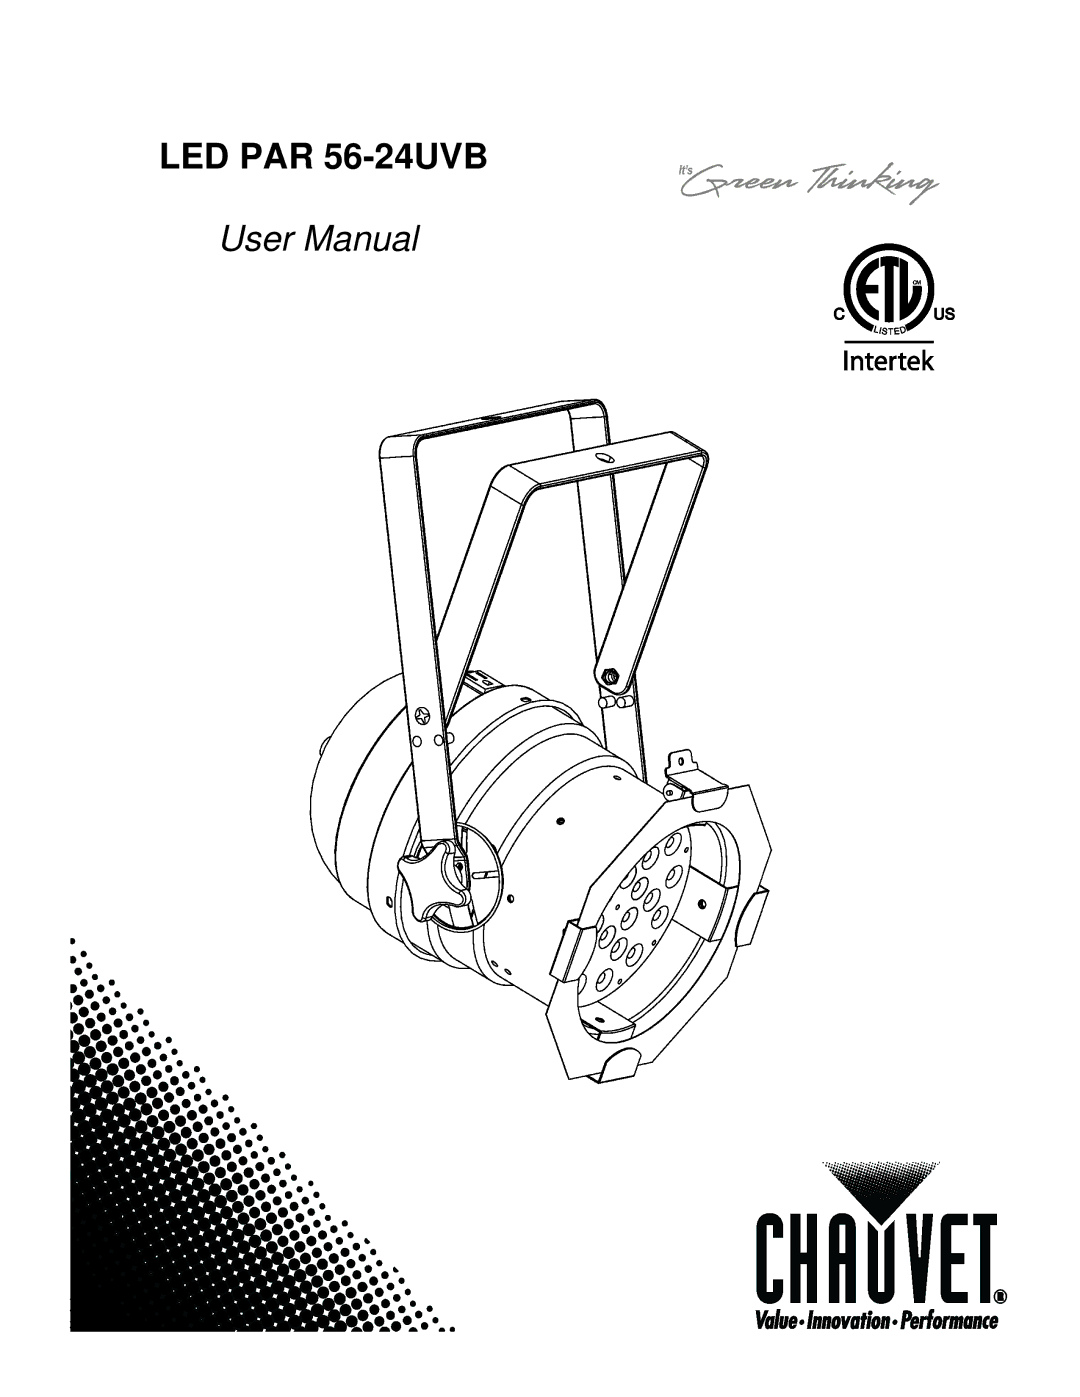 Chauvet user manual LED PAR 56-24UVB 